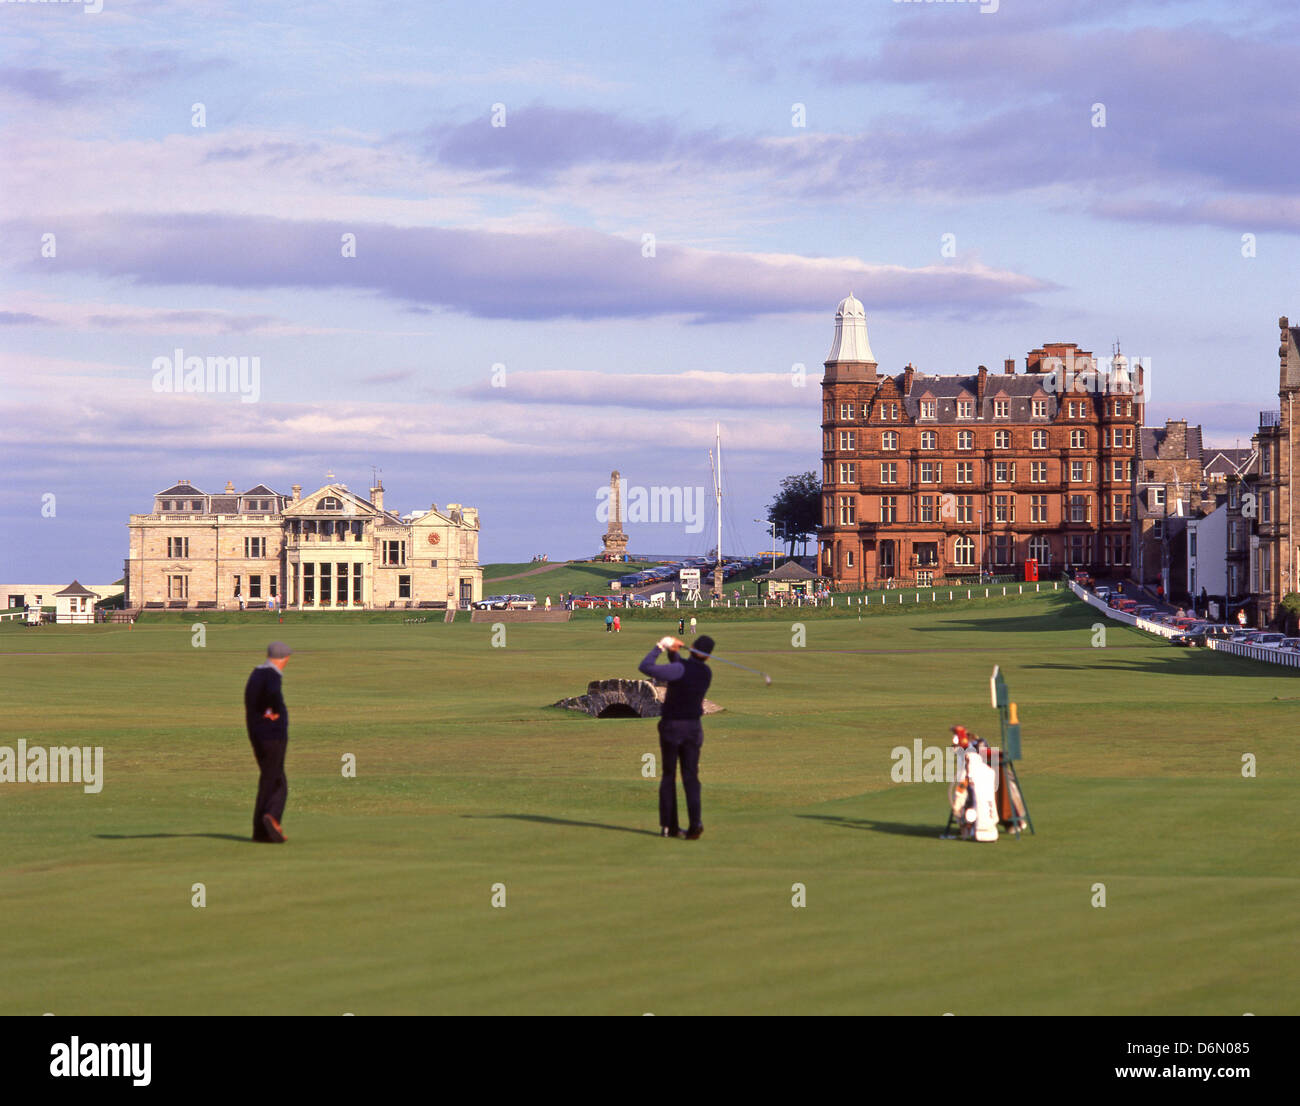 Clubhaus und 18. Loch auf dem Old Course in St Andrews, St Andrews, Fife, Schottland, Vereinigtes Königreich Stockfoto